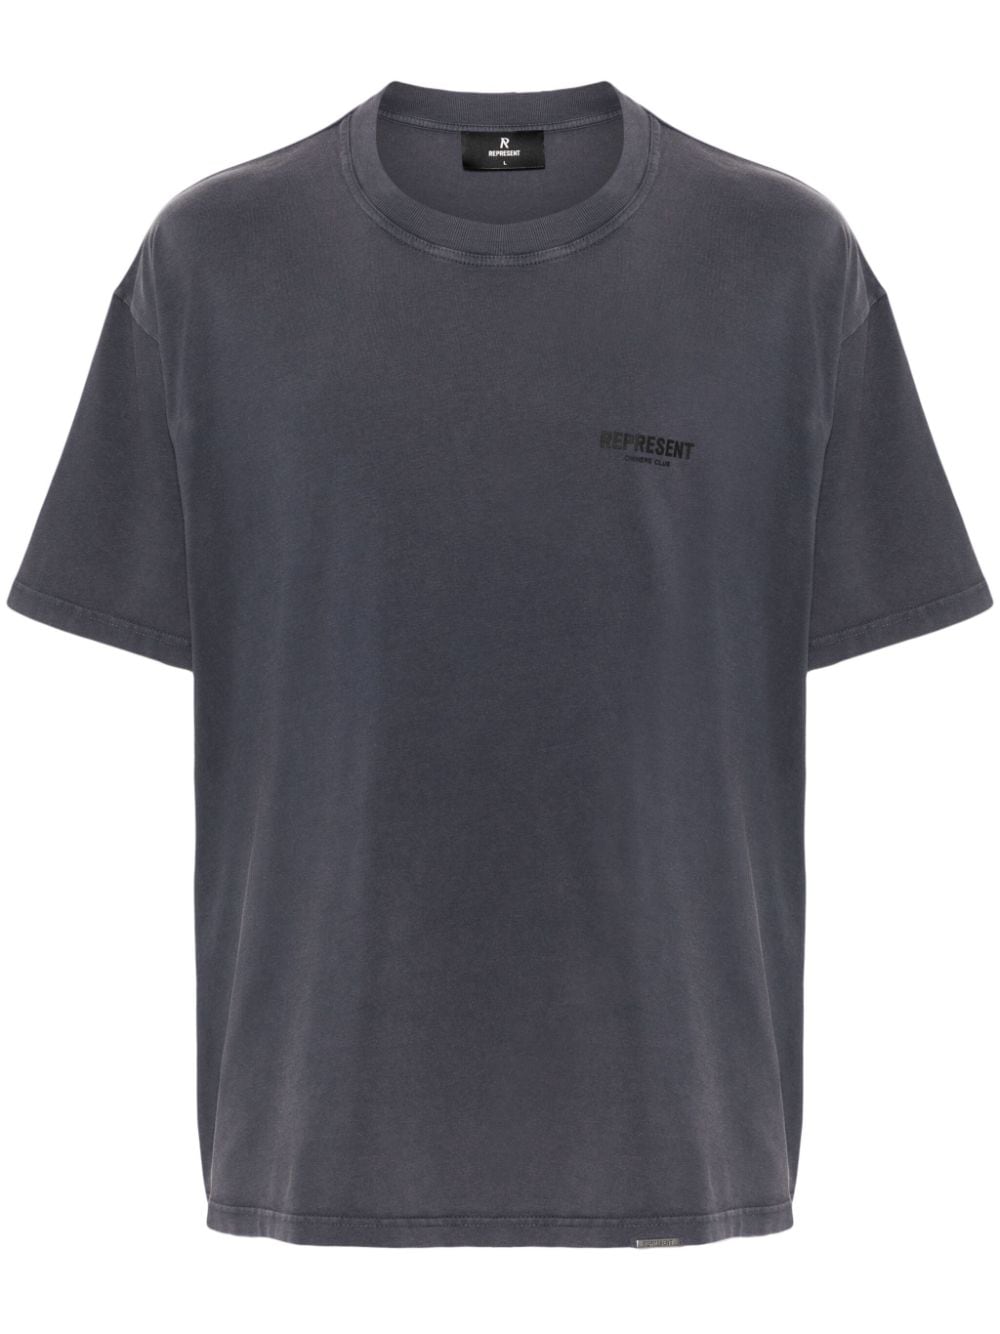 T-shirt over grigio scuro